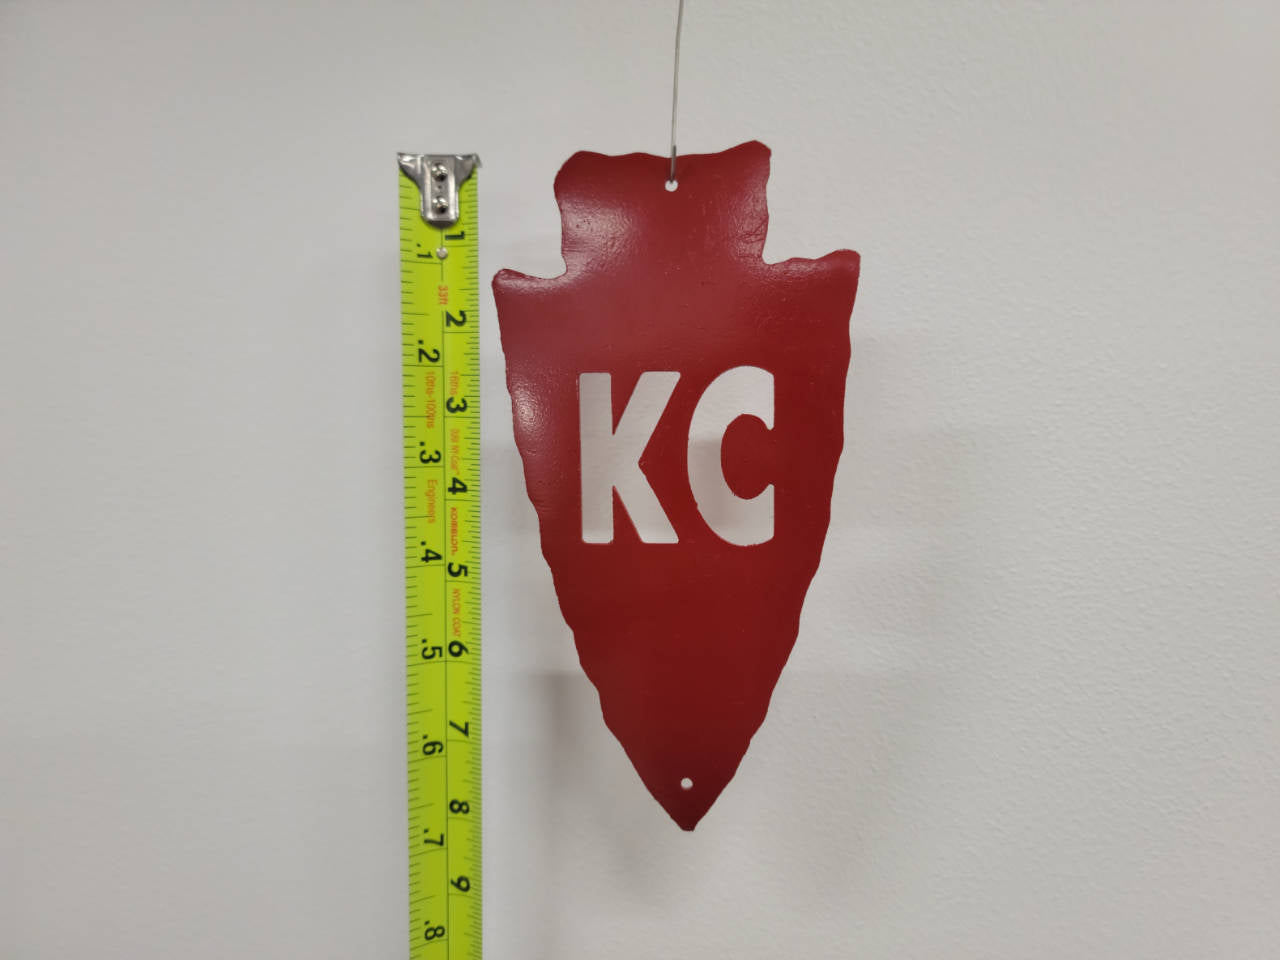 KC Arrowhead Sign / Ornament